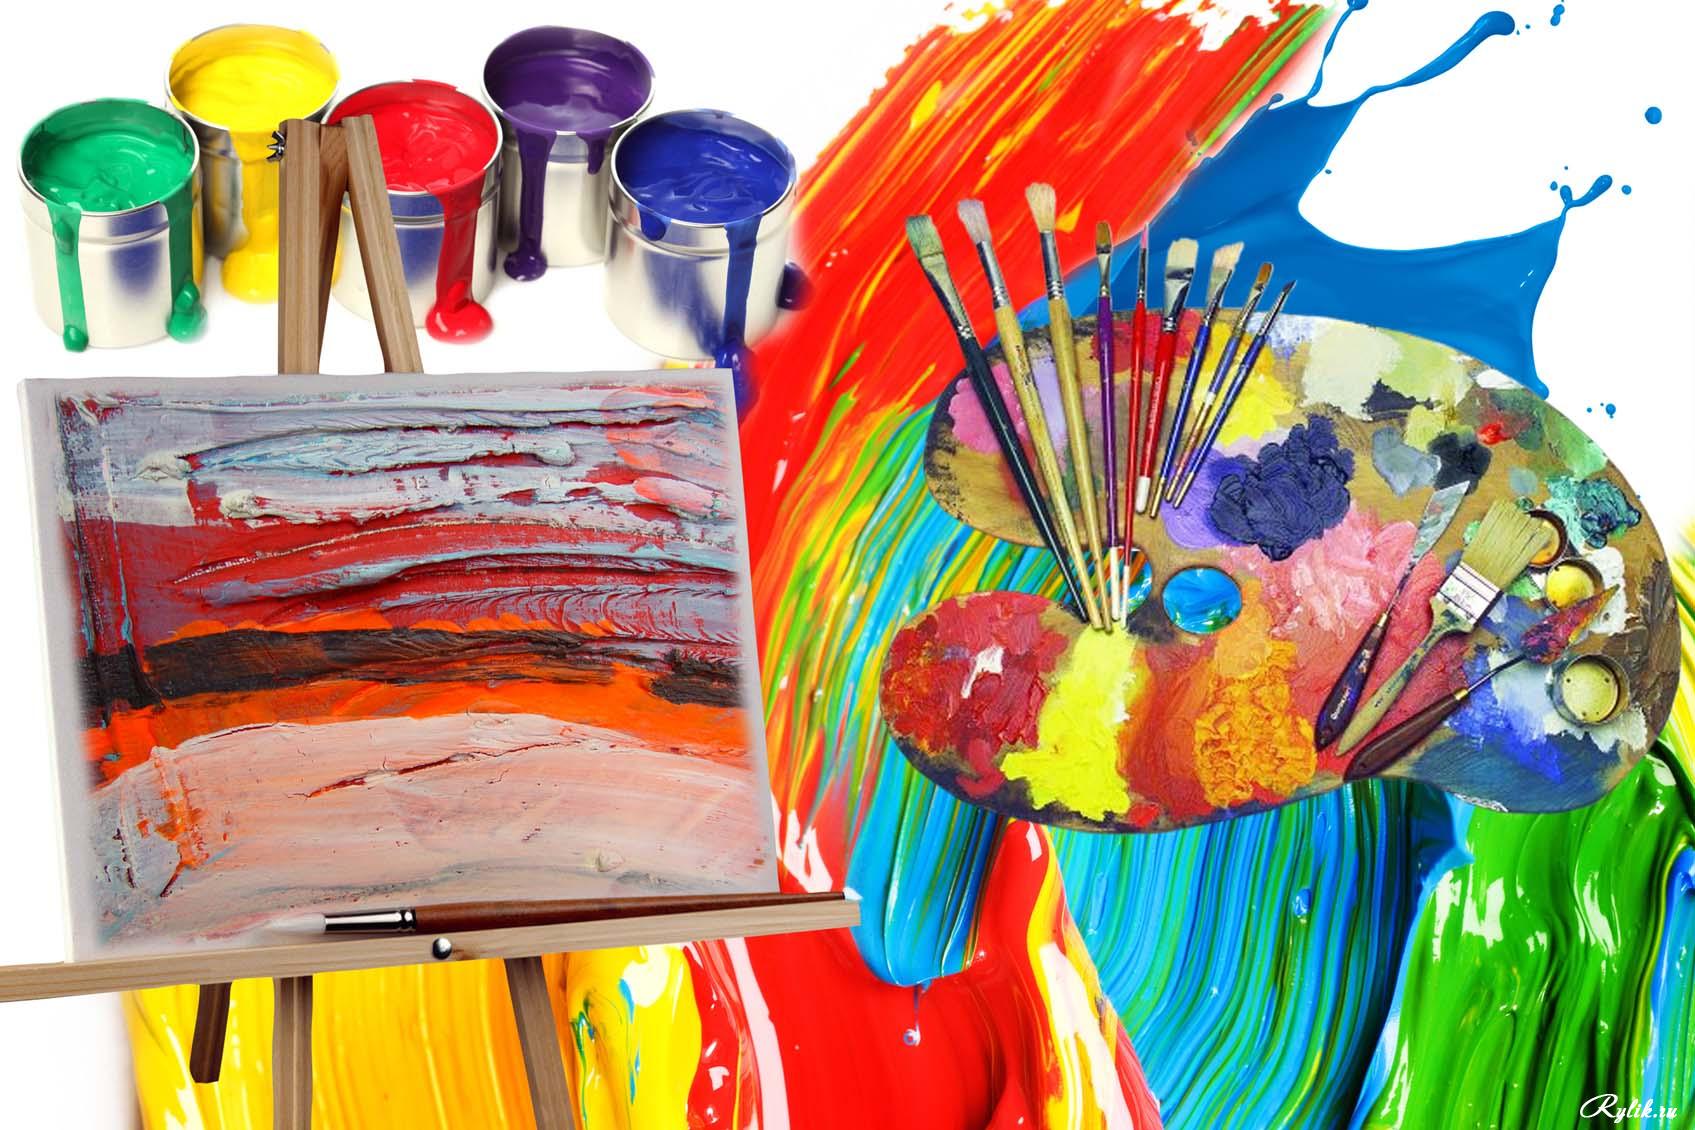 페인트 벽지,페인트 등,아동 예술,미술,시각 예술,현대 미술